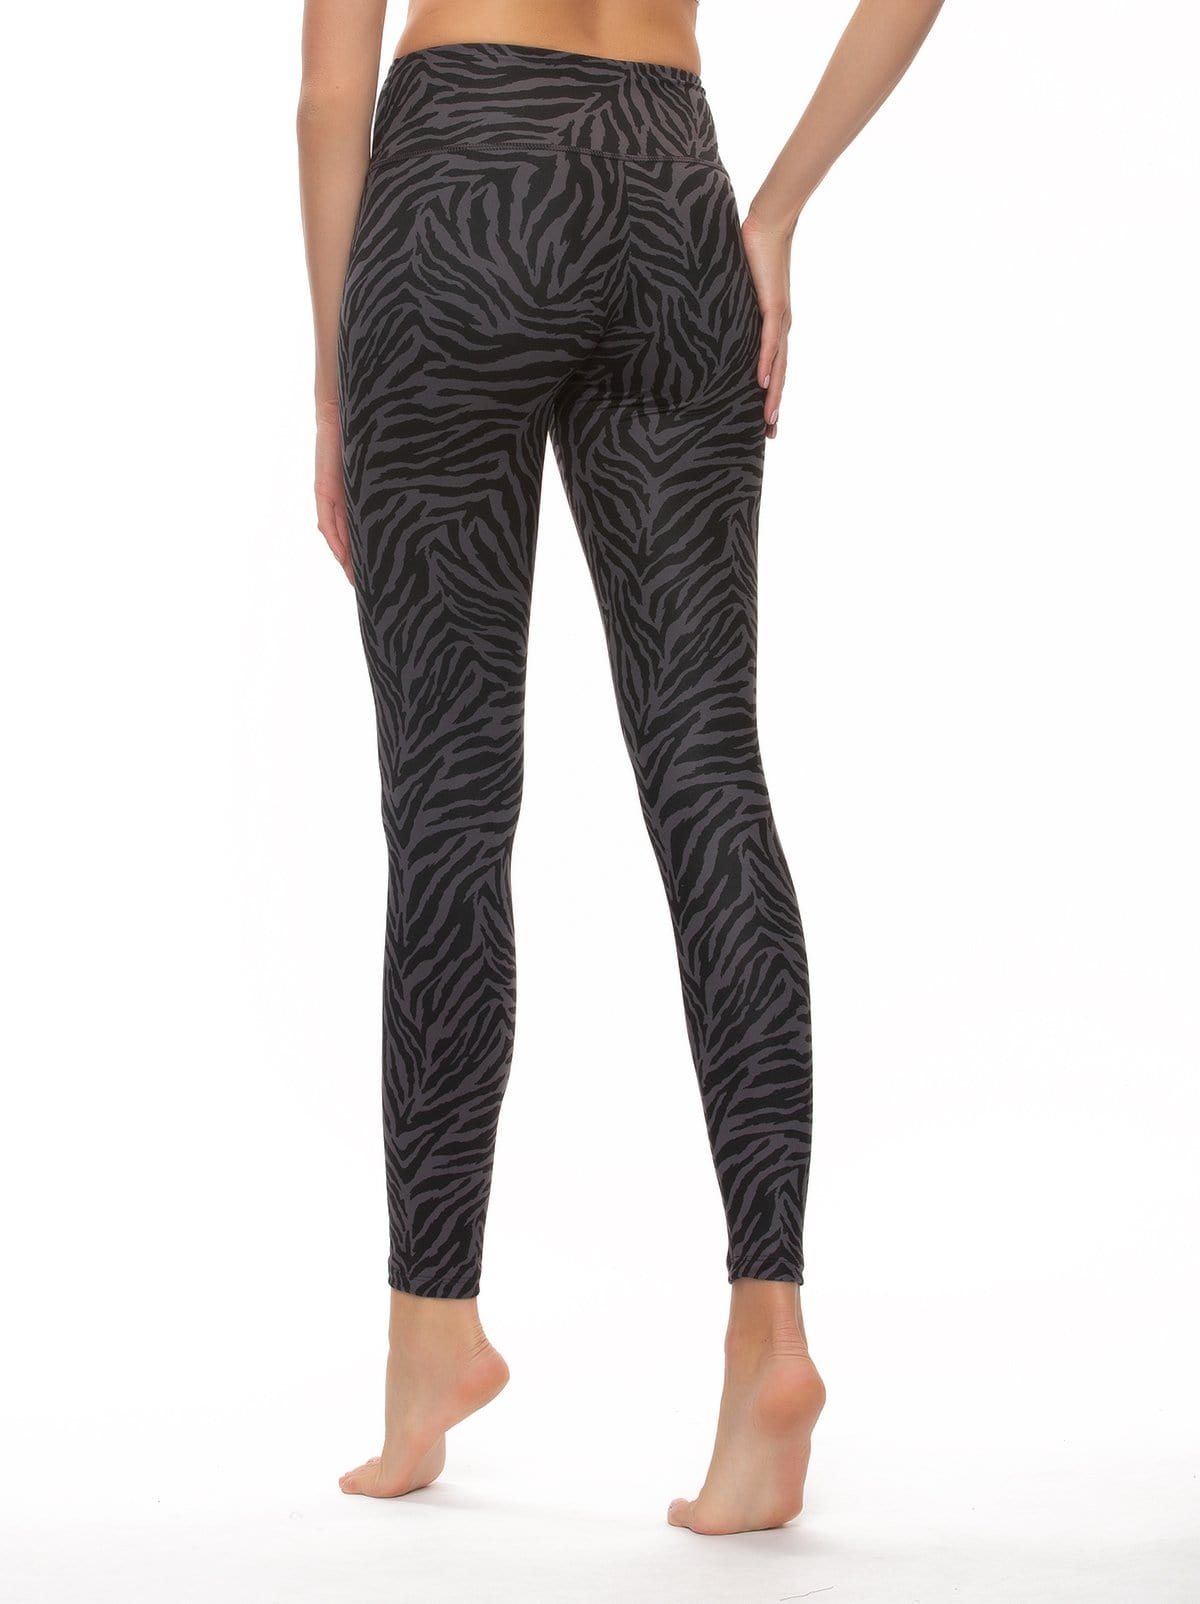 sueded legging color-quicksilver zebra